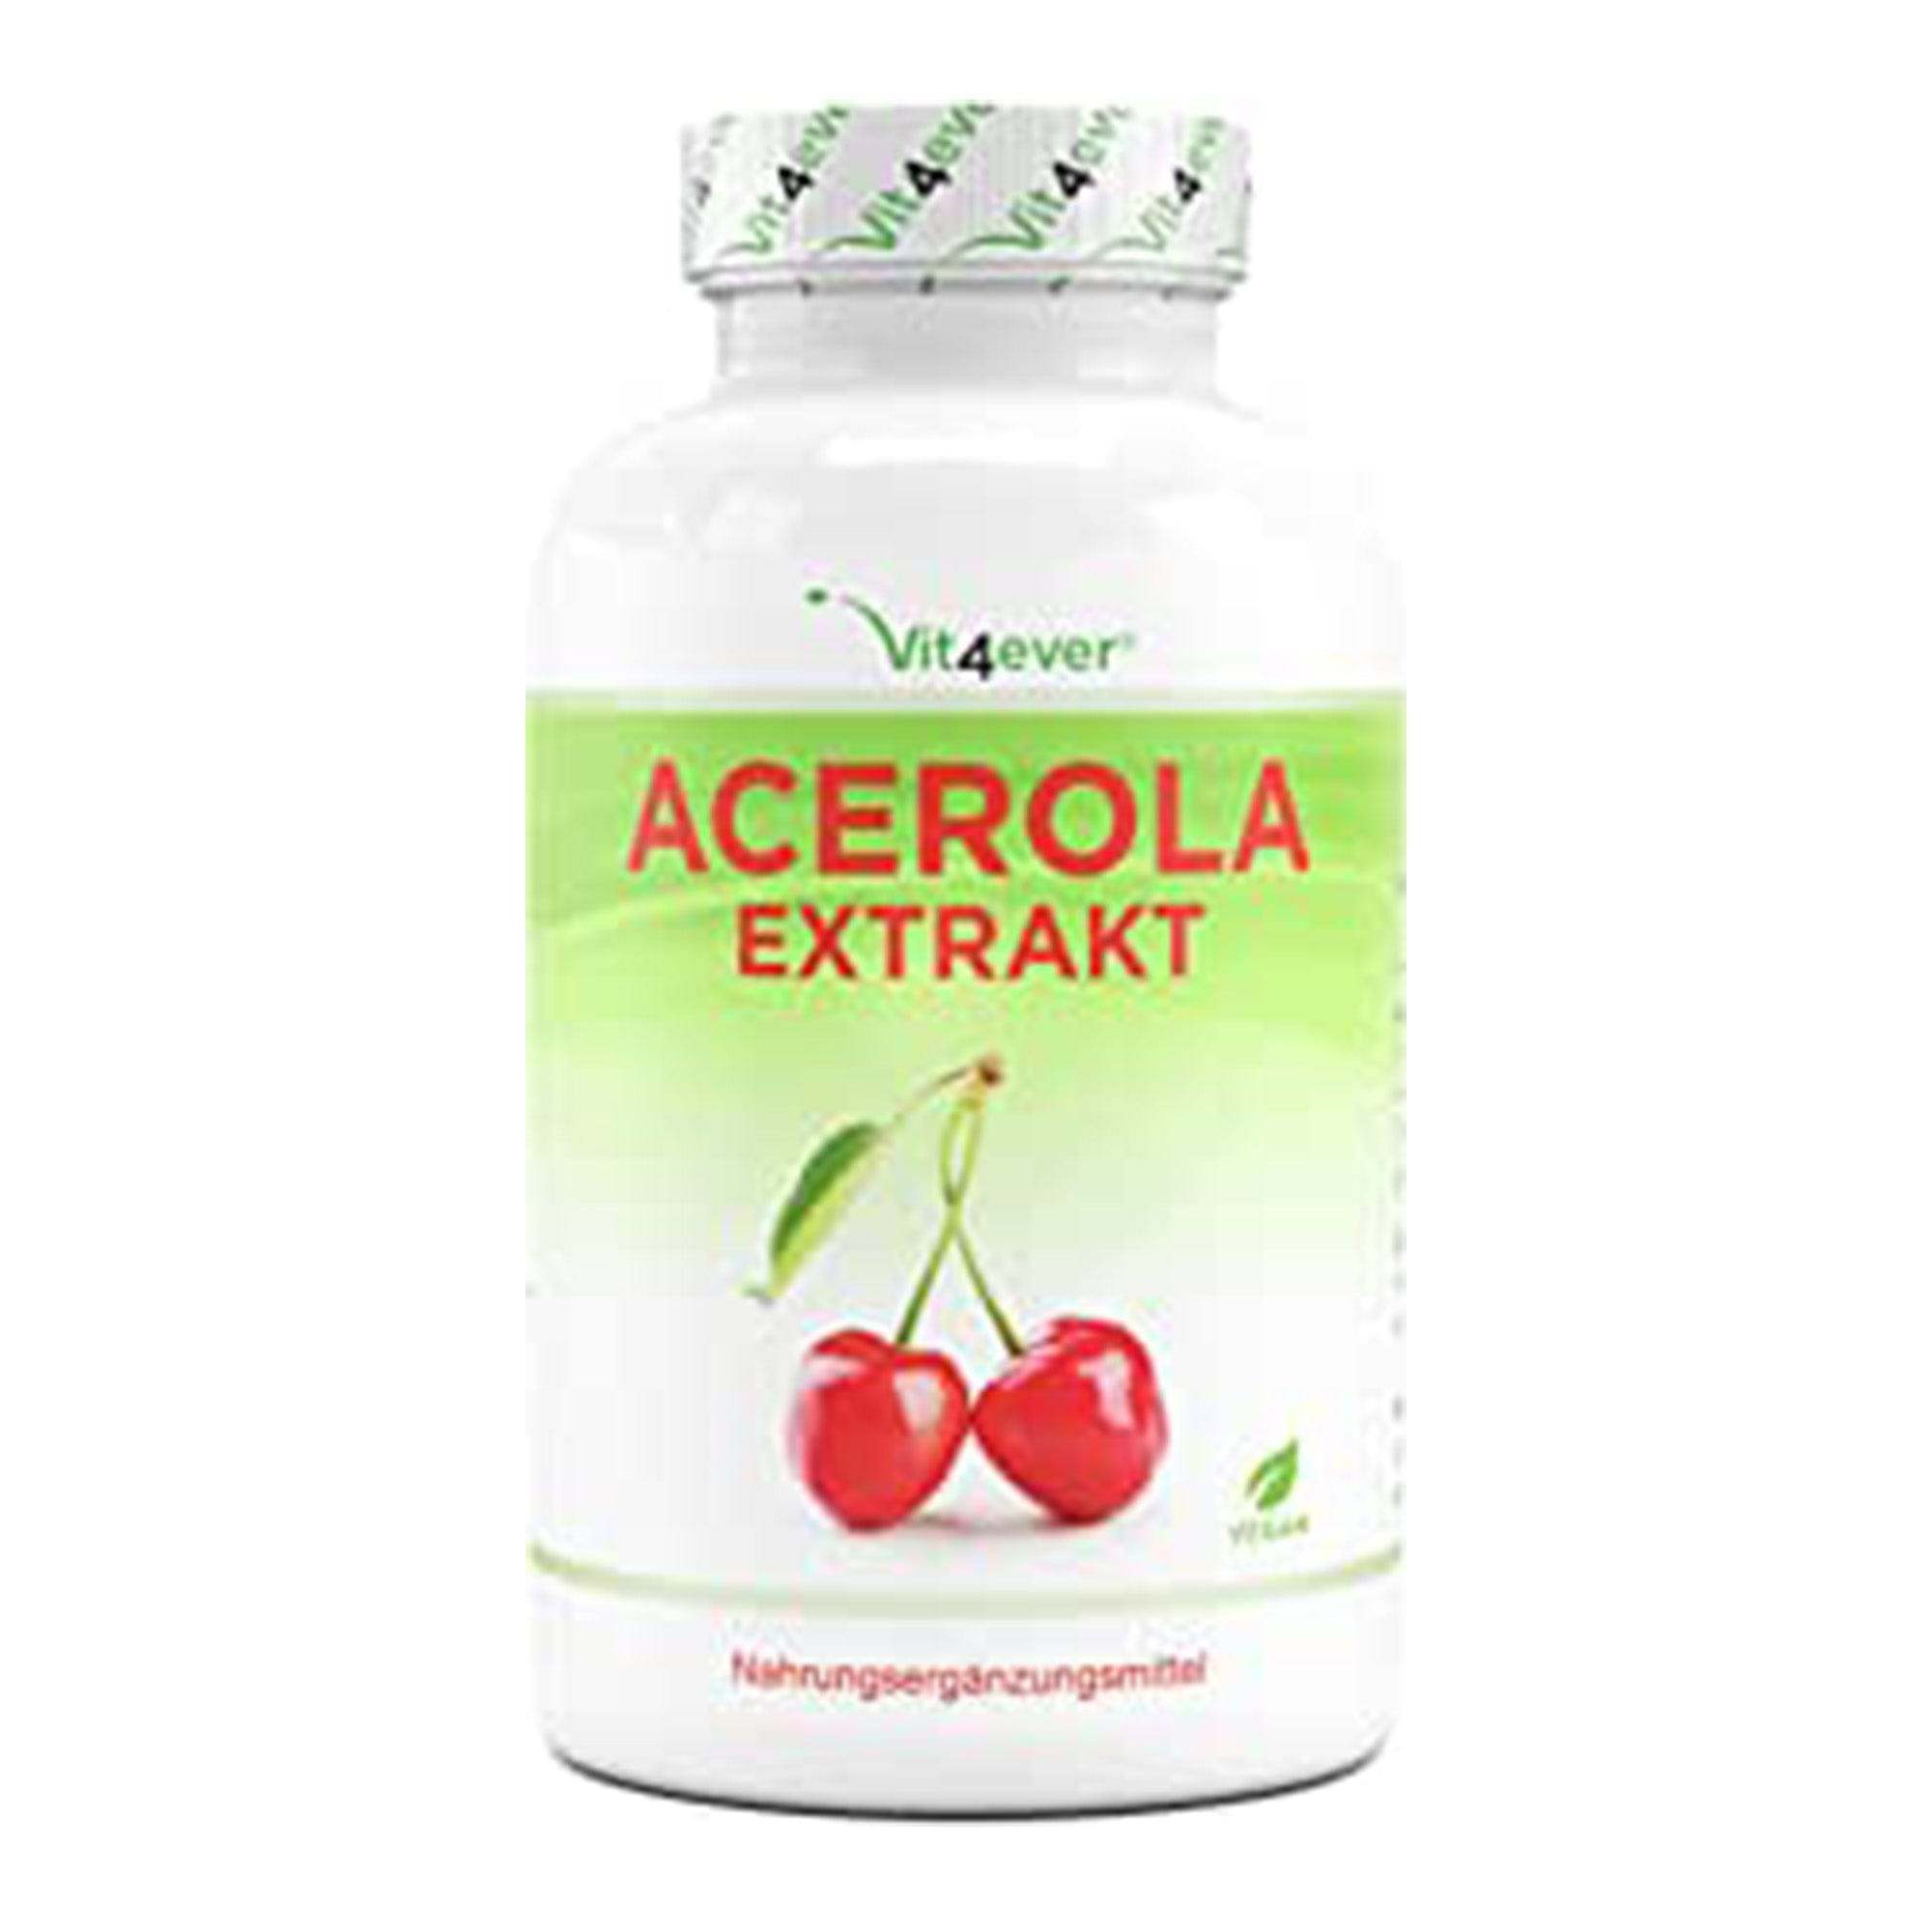 Acerola-extract | 1500 mg | 25% natuurlijke vitamine C | 240 capsules | Vit4ever